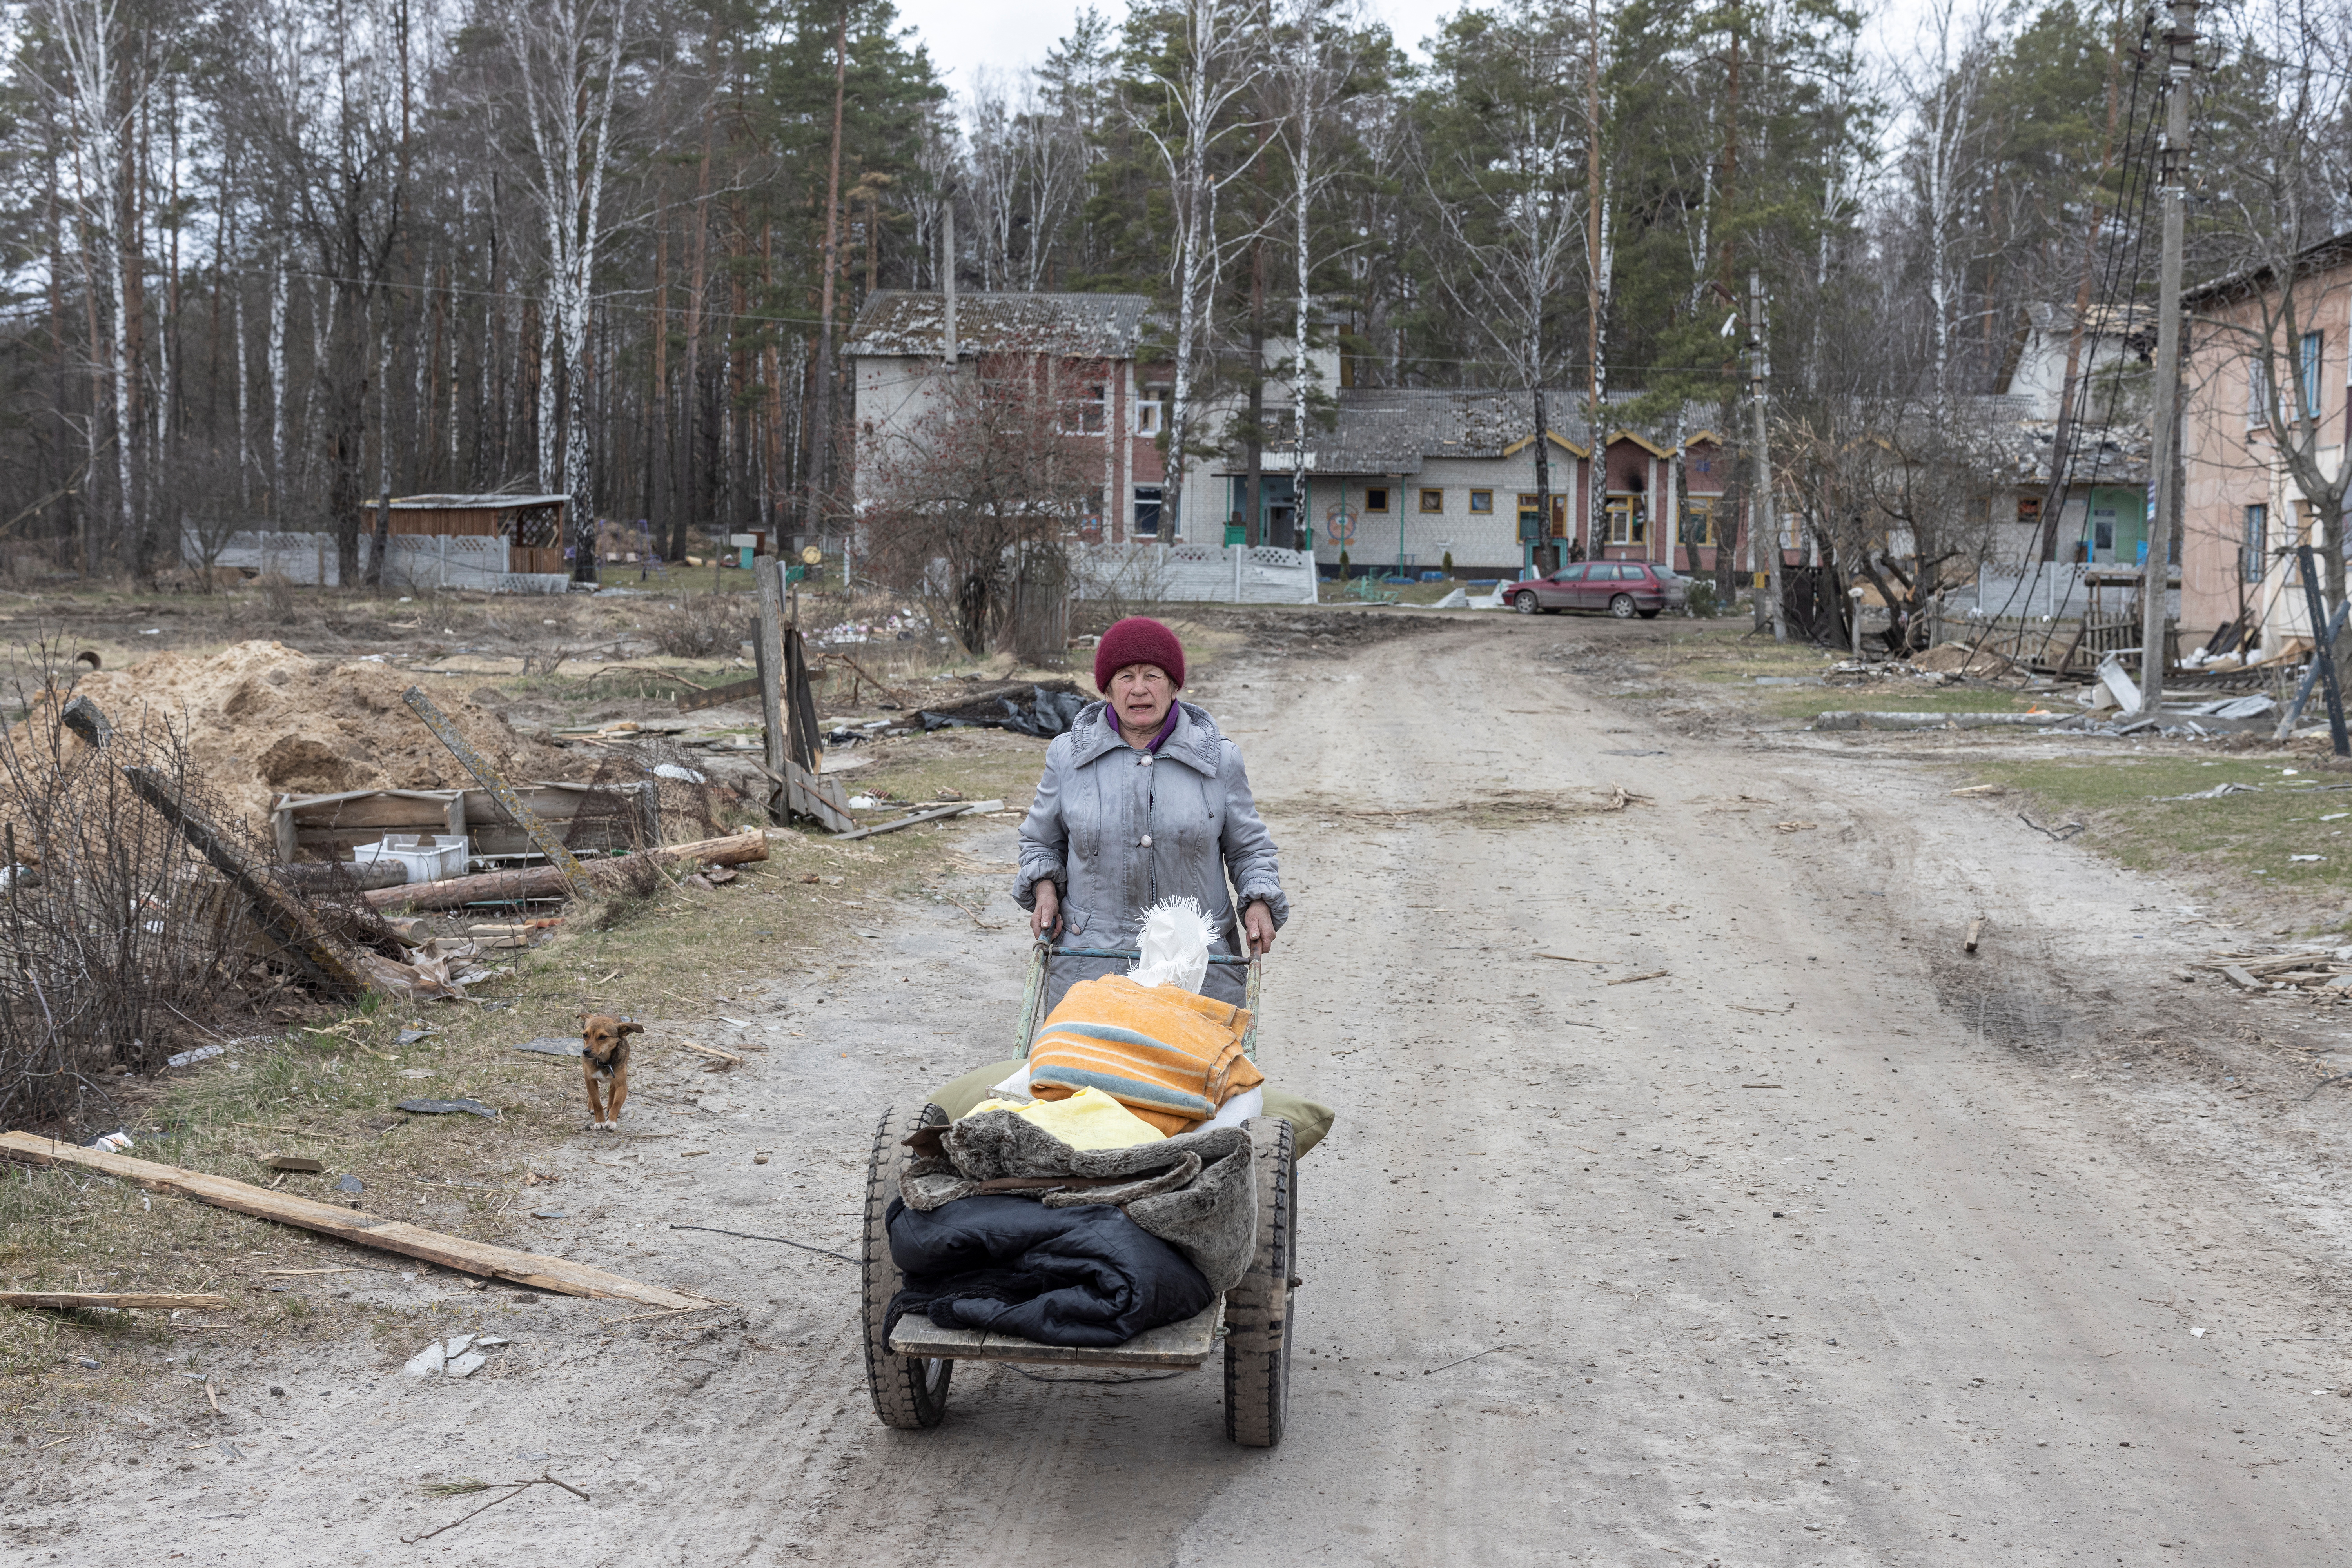 Tamara Klymchuk, de 64 años, acarrea las pertenencias que le han quedado tras la invasión rusa: "Teníamos una buena vida" dijo. Su sobrino de 50 años, Viktor Shevchenko, fue uno de los habitantes del pueblo asesinados por los rusos. "Nunca pensamos que tanto dolor podía caer sobre nosotros"